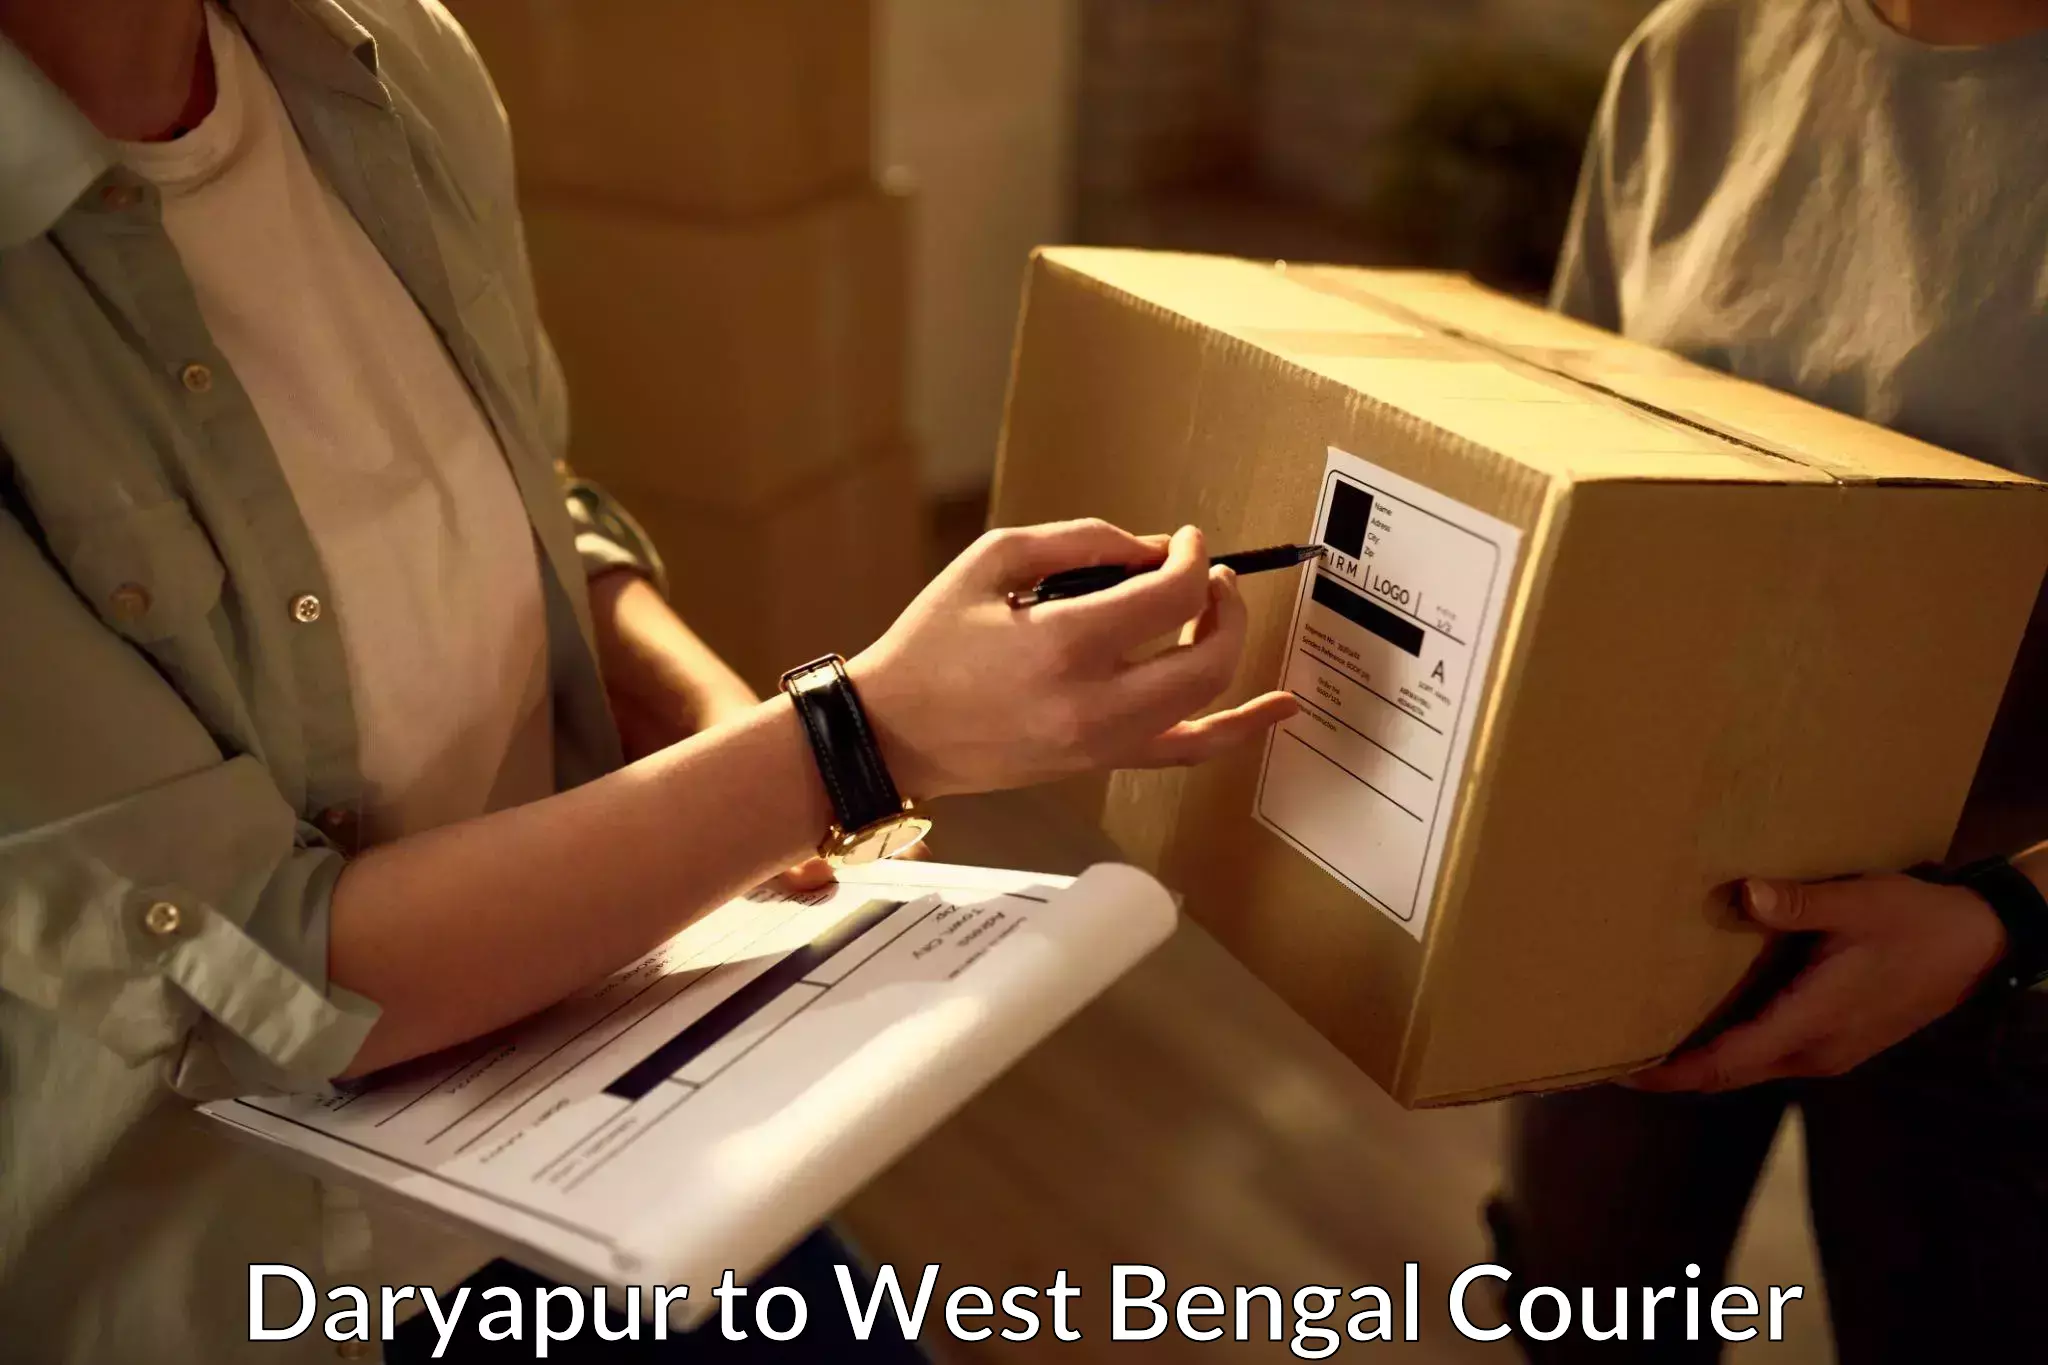 Pharmaceutical courier Daryapur to Kolkata Port